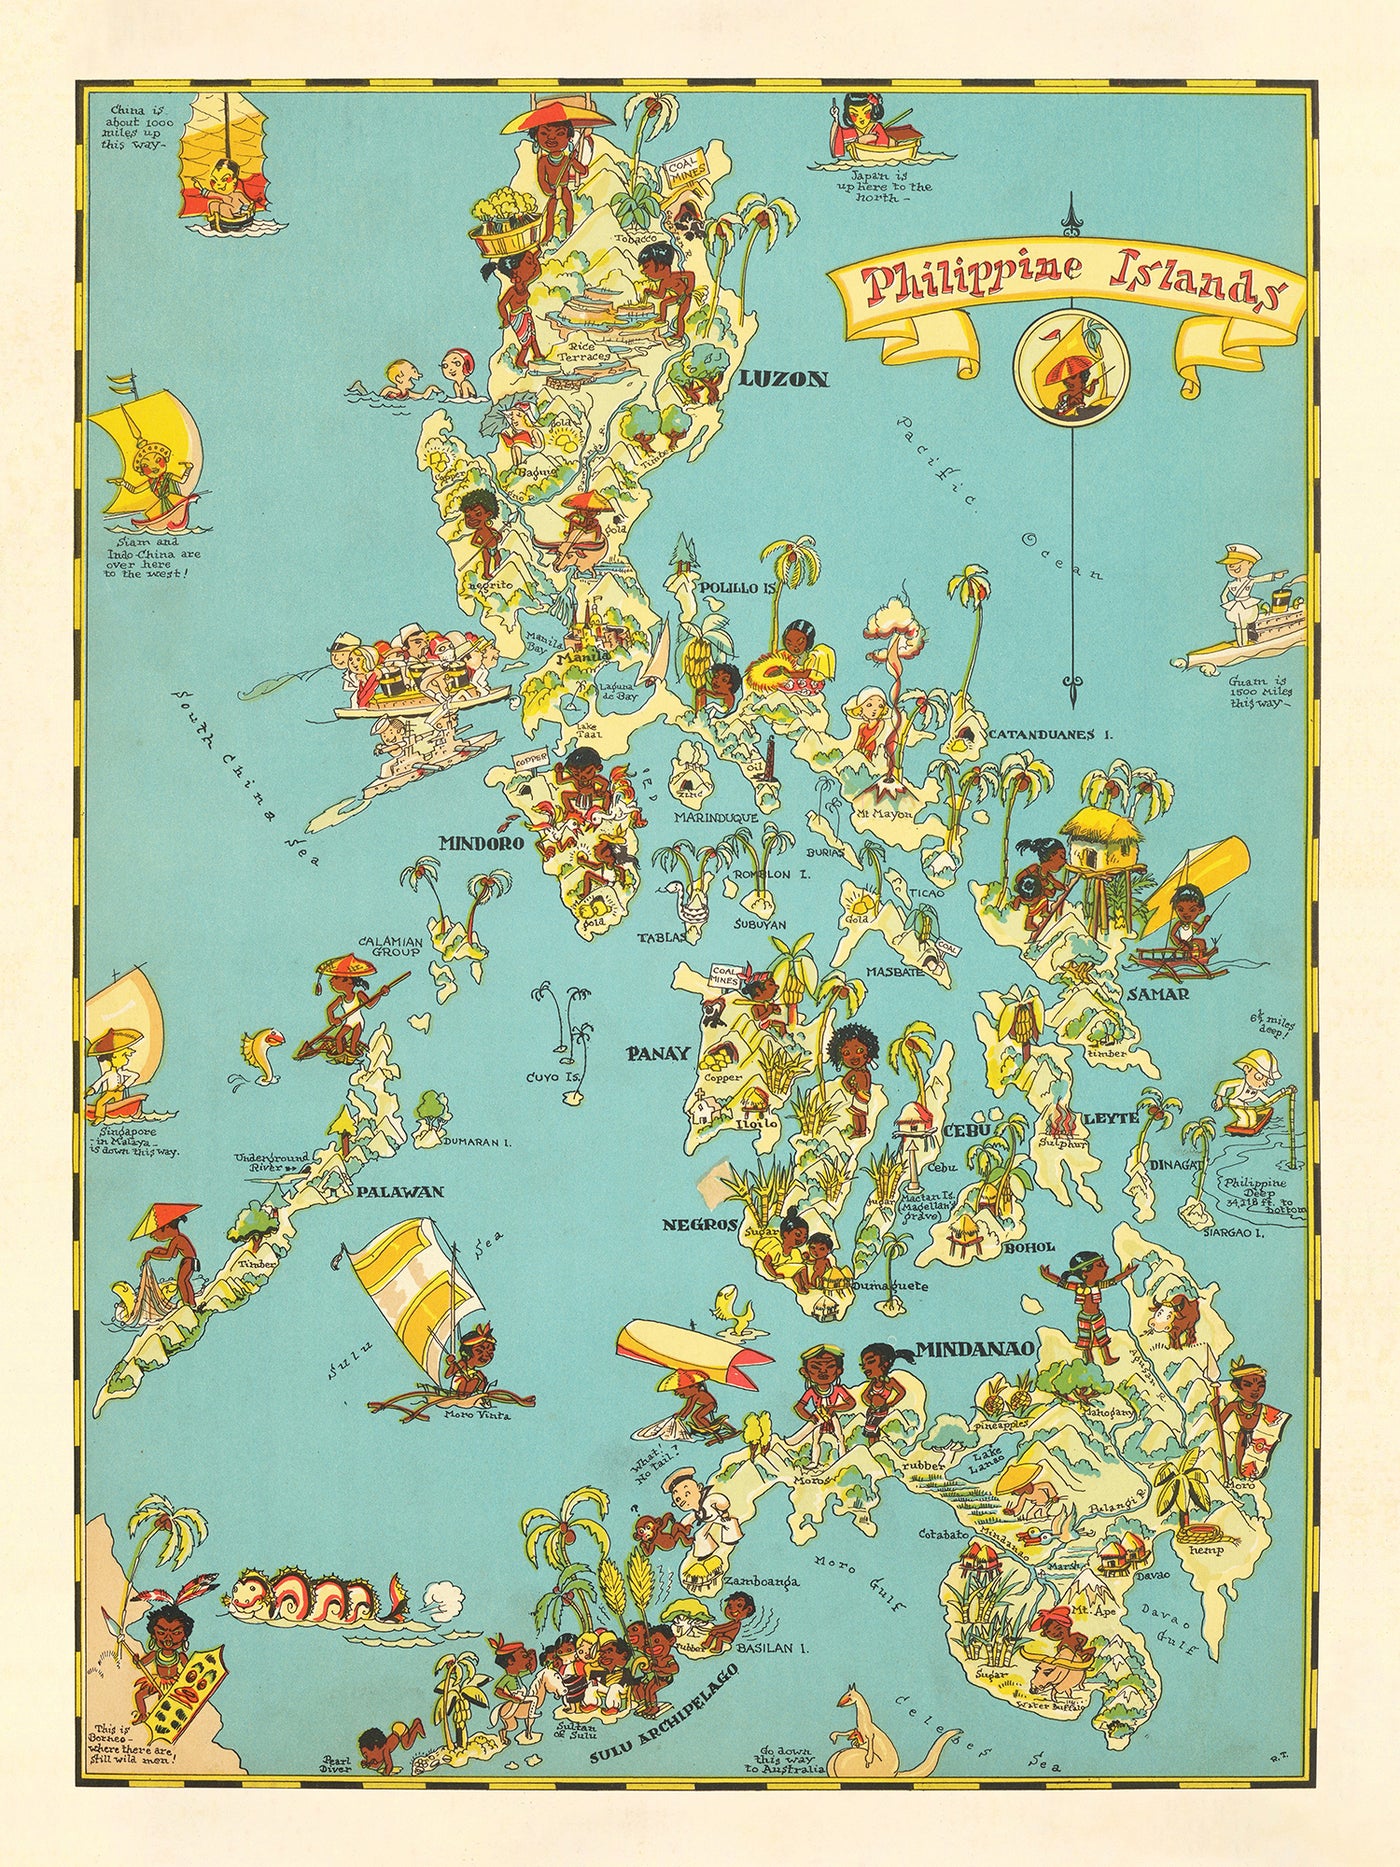 Alte Karte der Philippinen von Ruth Taylor White, 1935: Manila, Luzon, Samar, Mindanao und der Sulu-Archipel